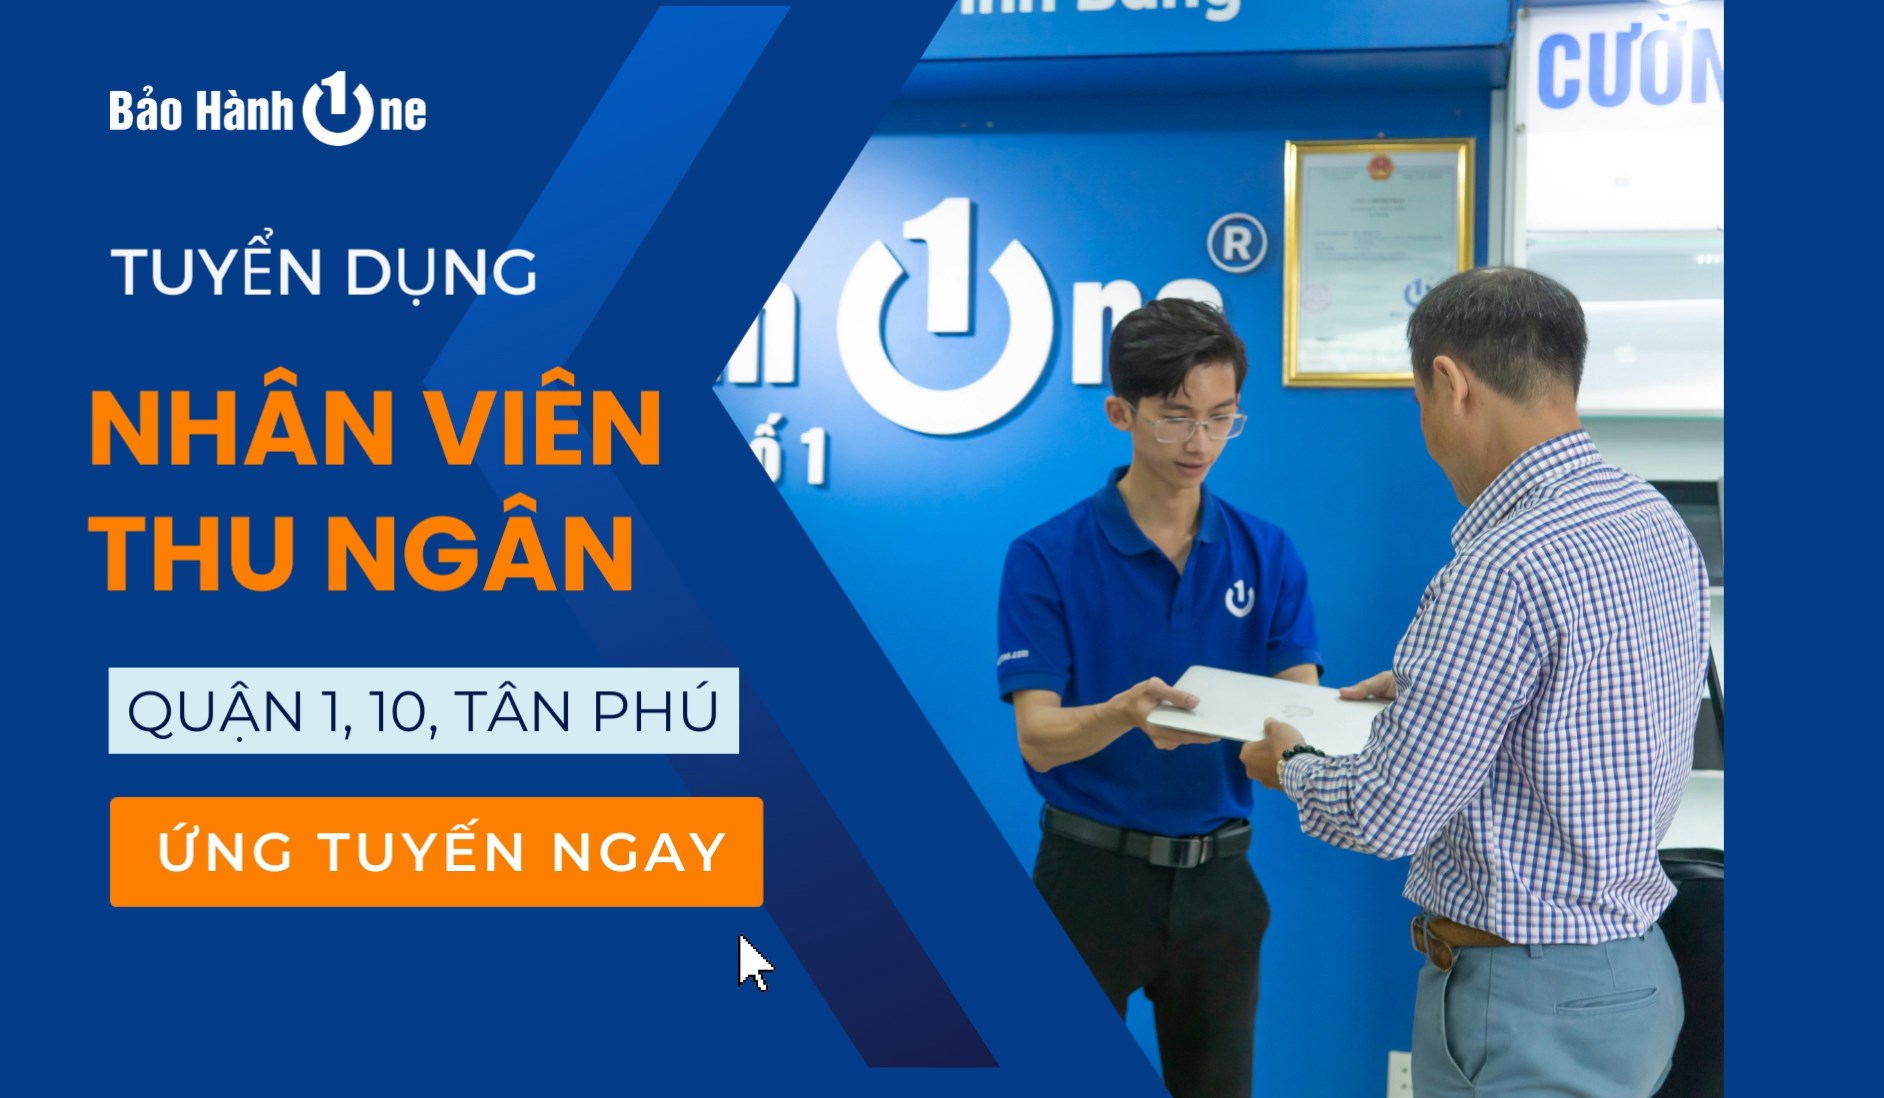 Bảo Hành One tuyển nhân viên thu ngân - Quận 1, 10, Tân Phú